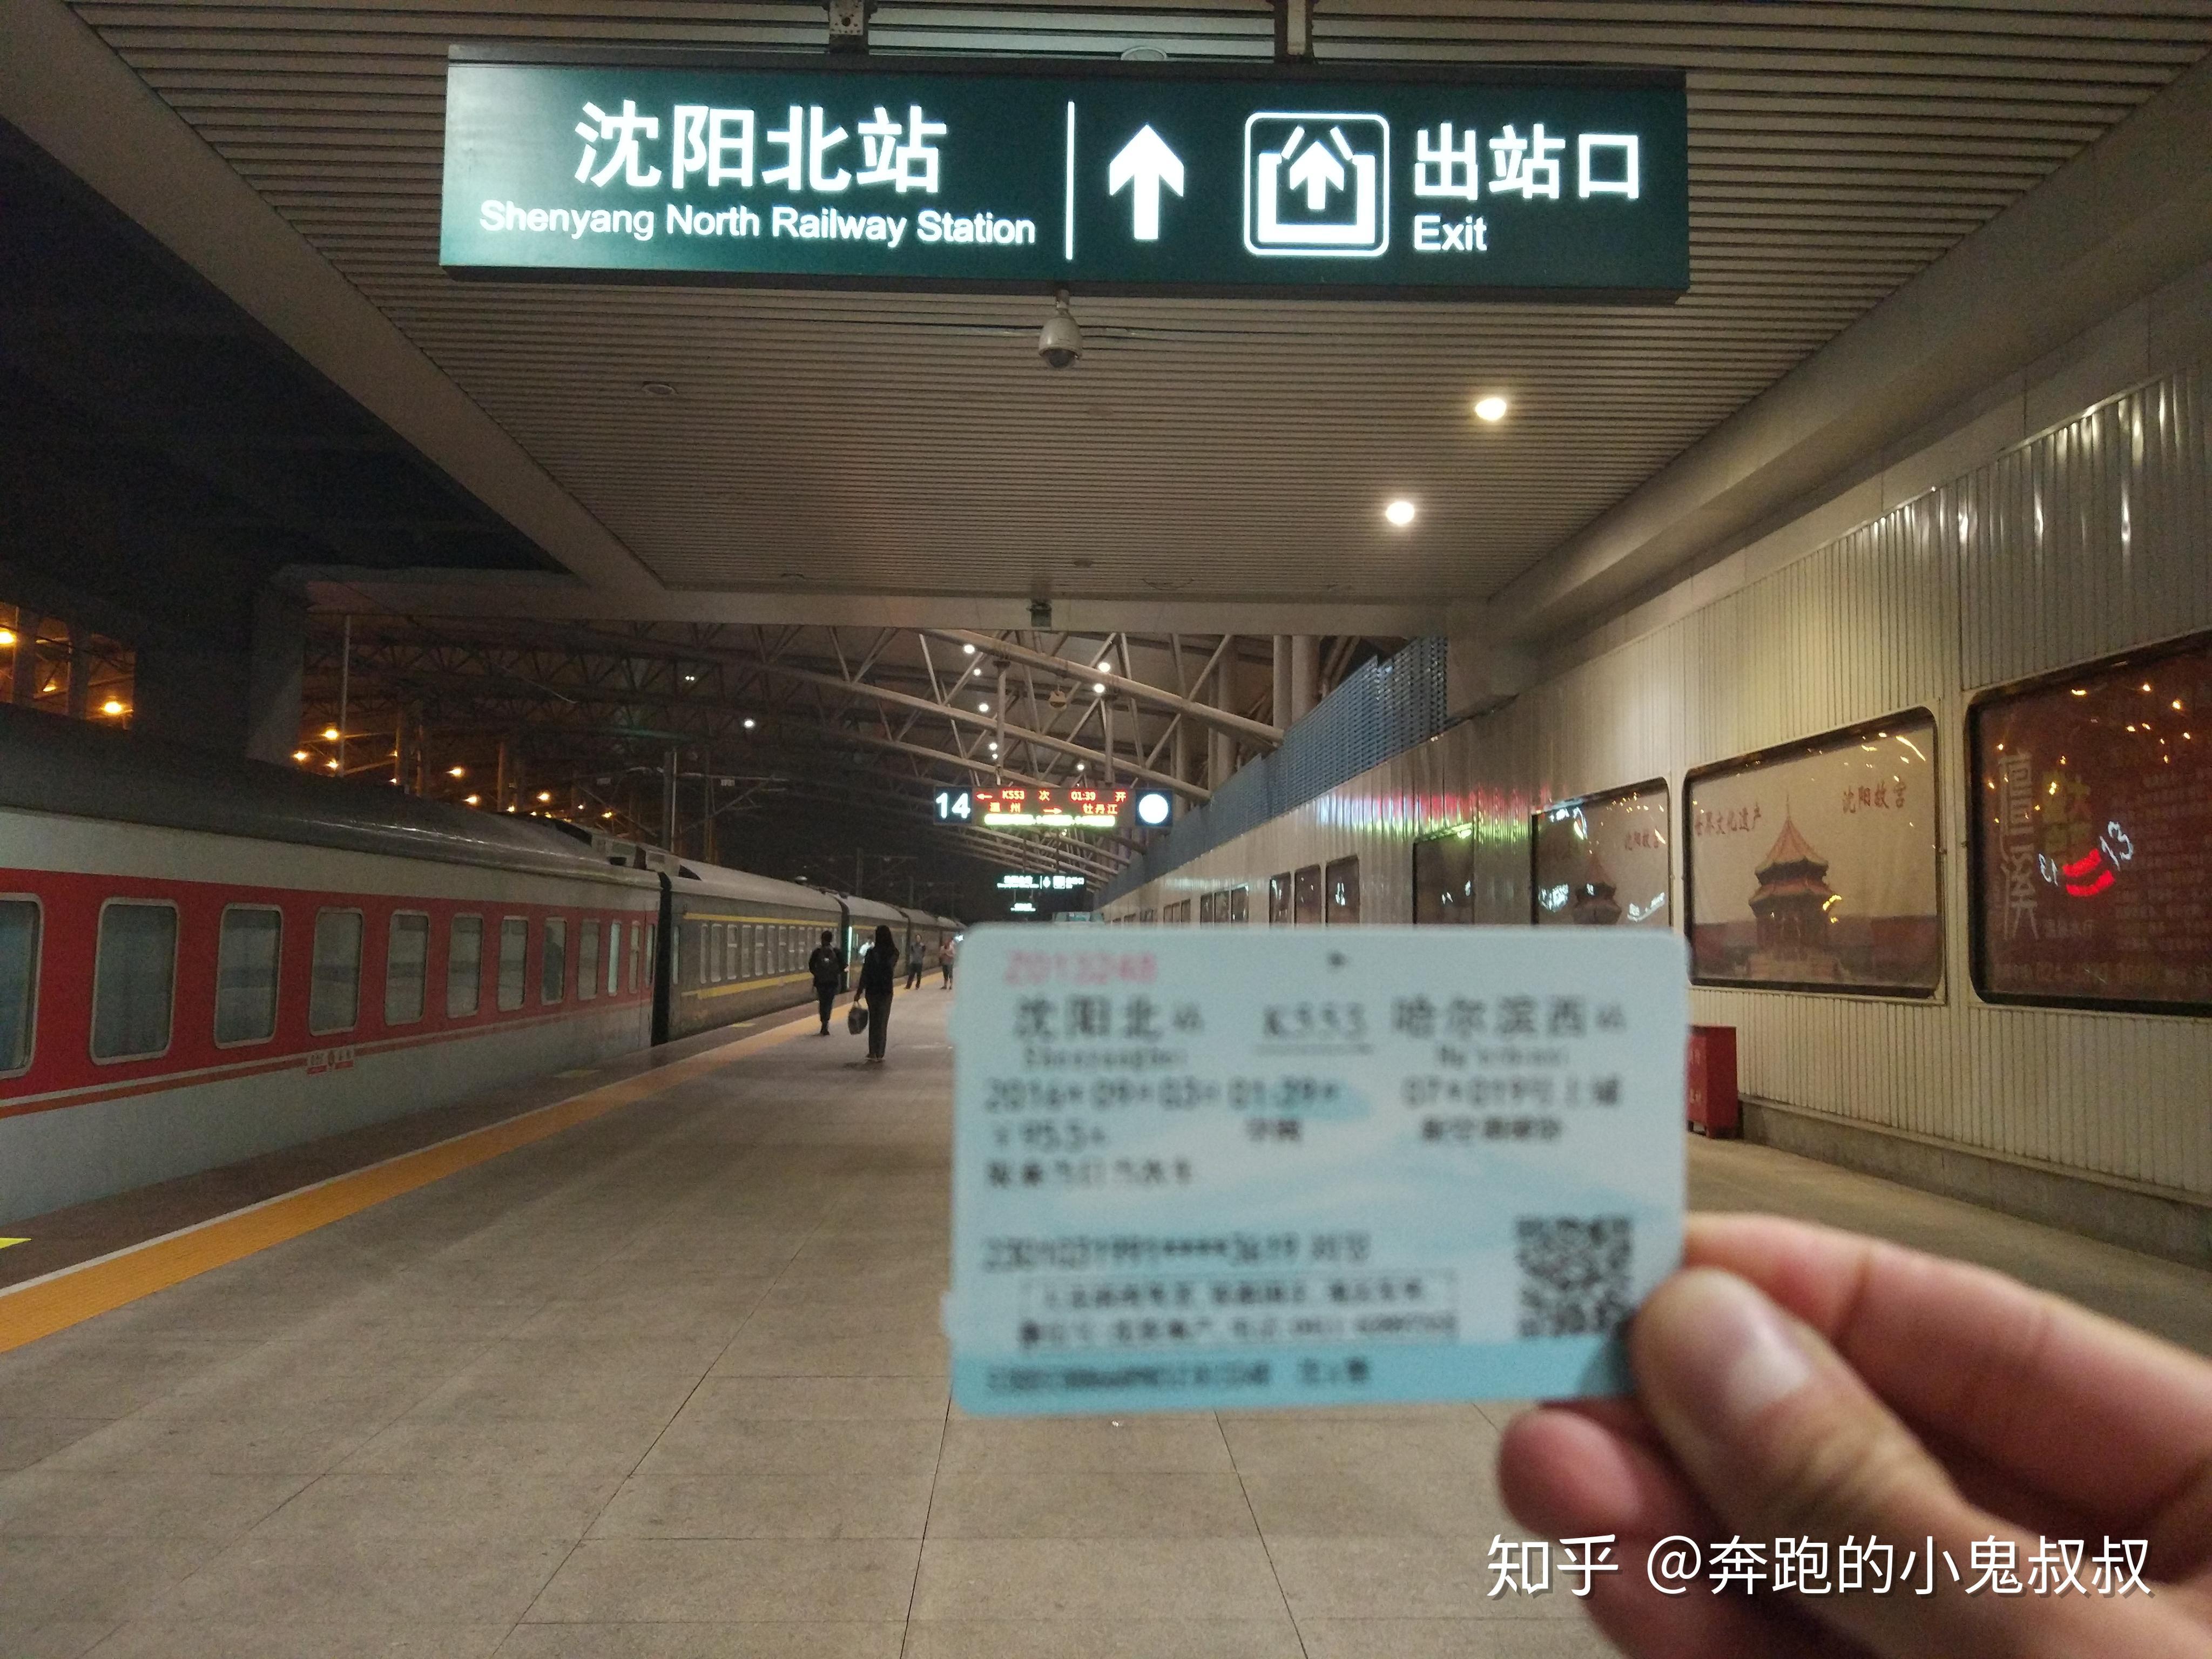 们,由大连北站站始发,途径本站,终到哈尔滨西站的高七百一十三次列车